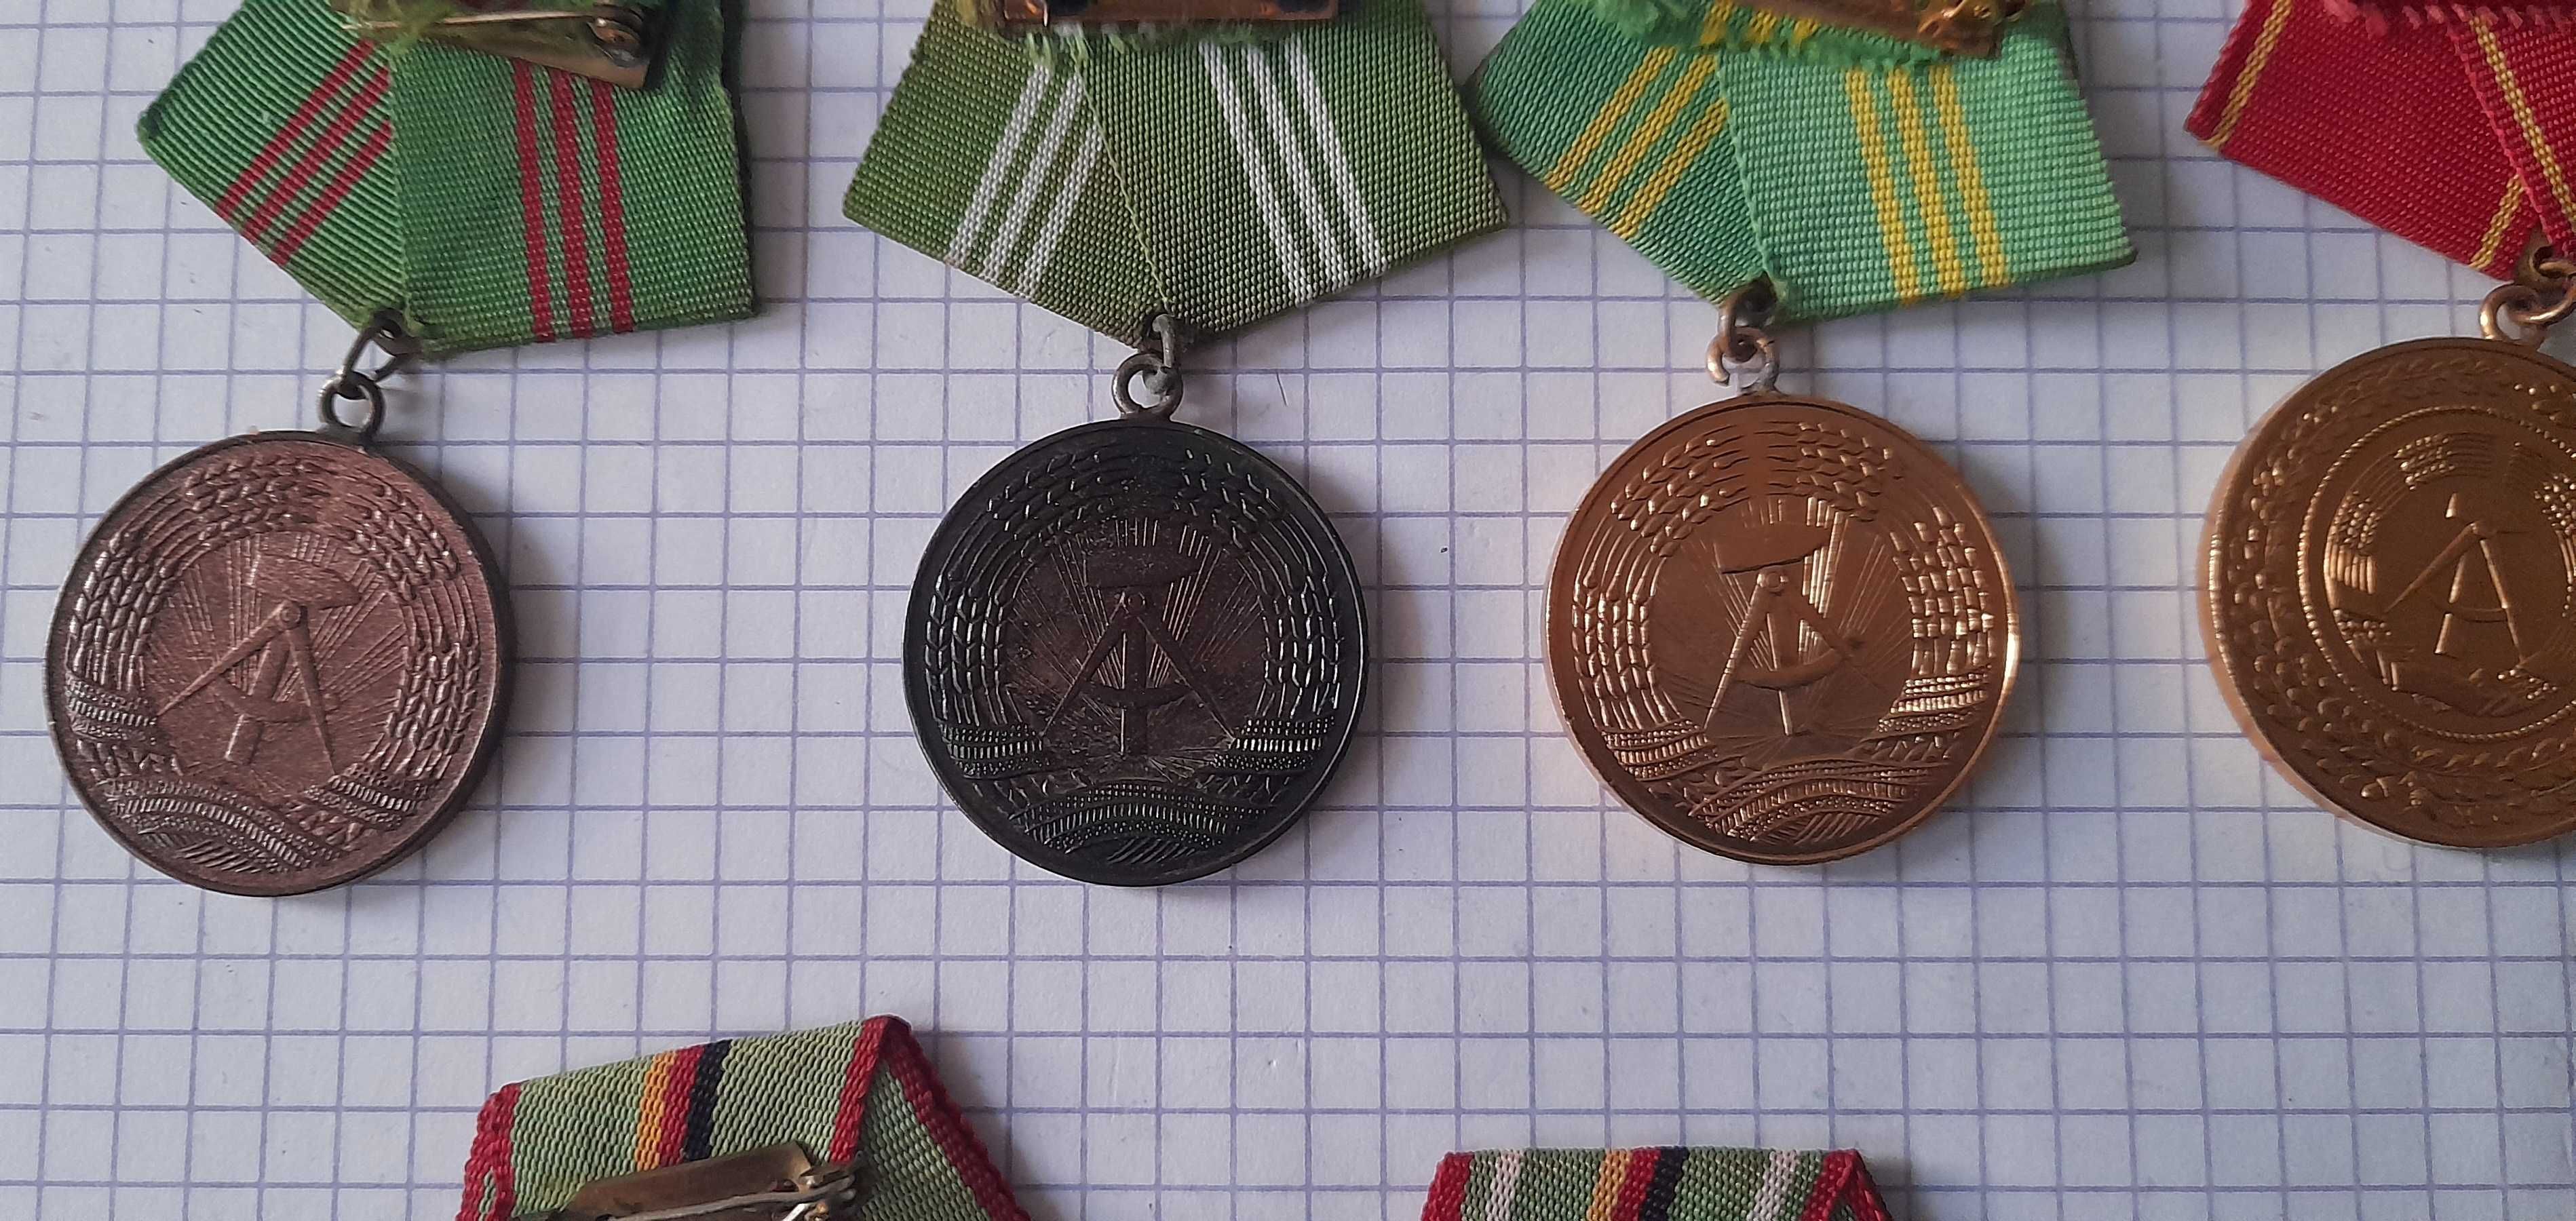 medale policja milicja wschodnioniemiecka NRD (DDR) volkspolizei